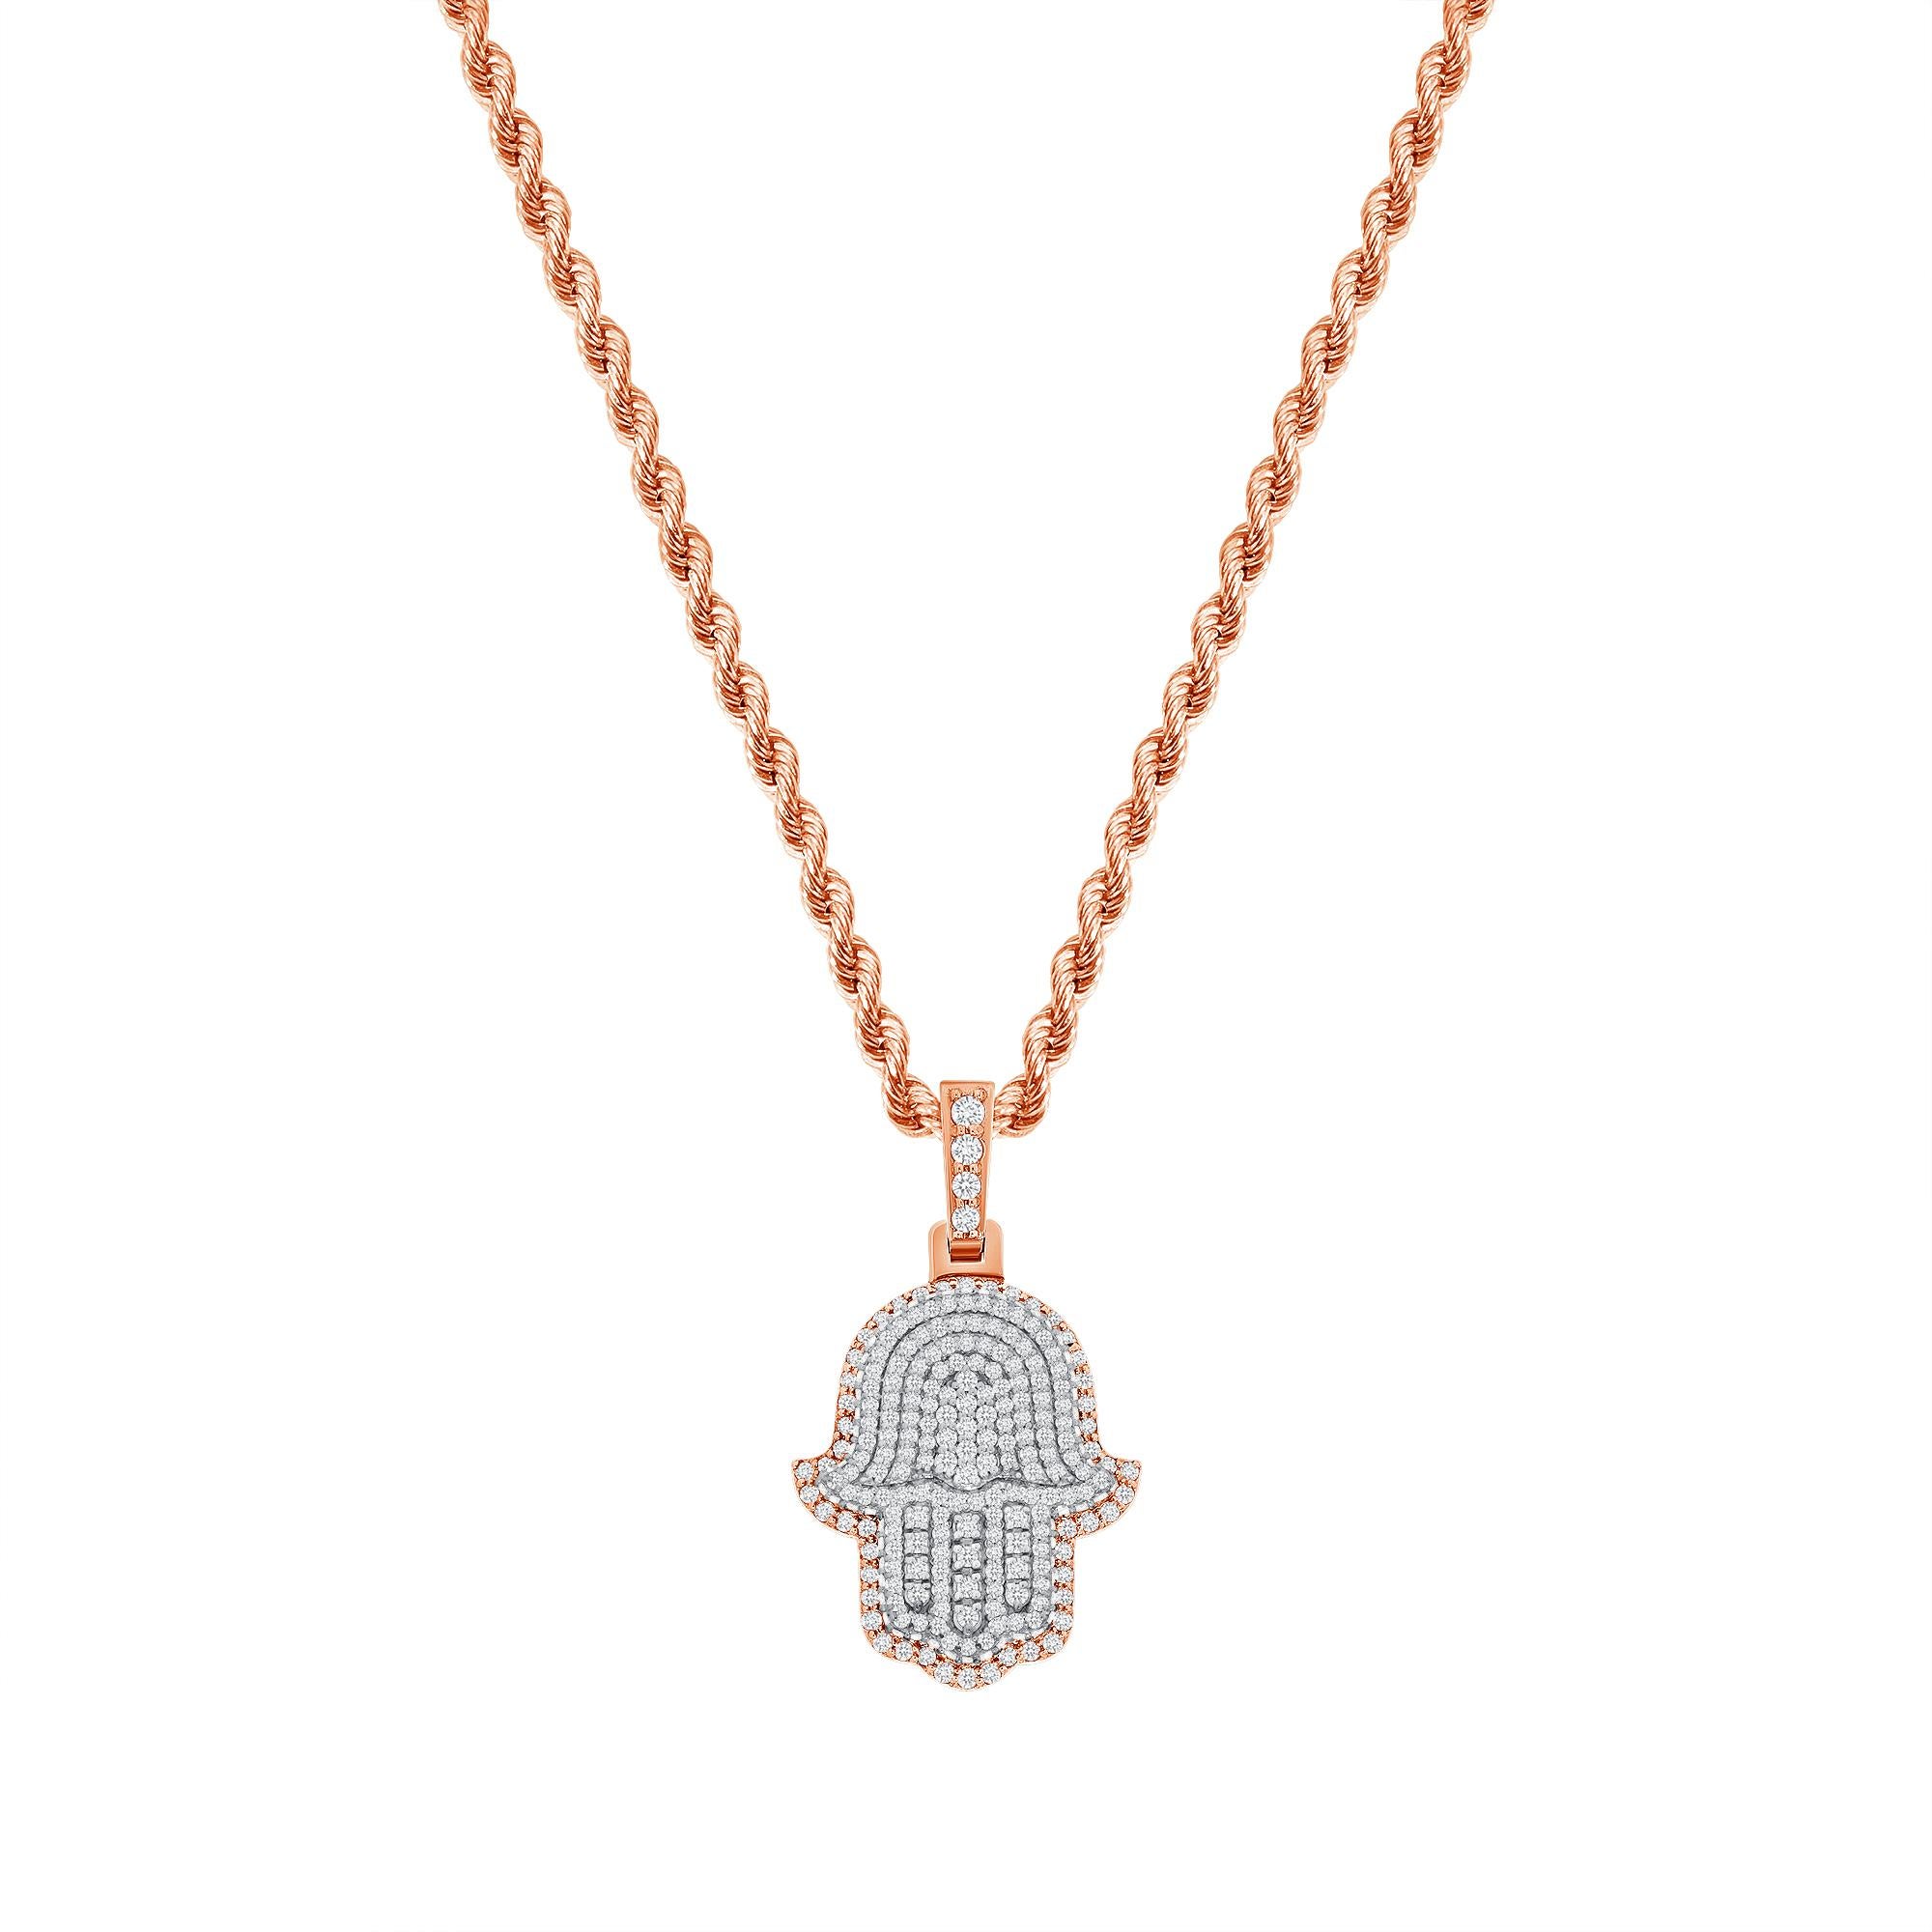 Diese Hamsa-Diamant-Halskette bietet sowohl einen spirituellen als auch einen modischen Trend-Look. 

Metall: 14k Gold
Diamant-Schliff: Rund
Diamant Karat gesamt: 2 Karat
Diamant Reinheit: VS
Farbe des Diamanten: F-G
Länge der Halskette: 22